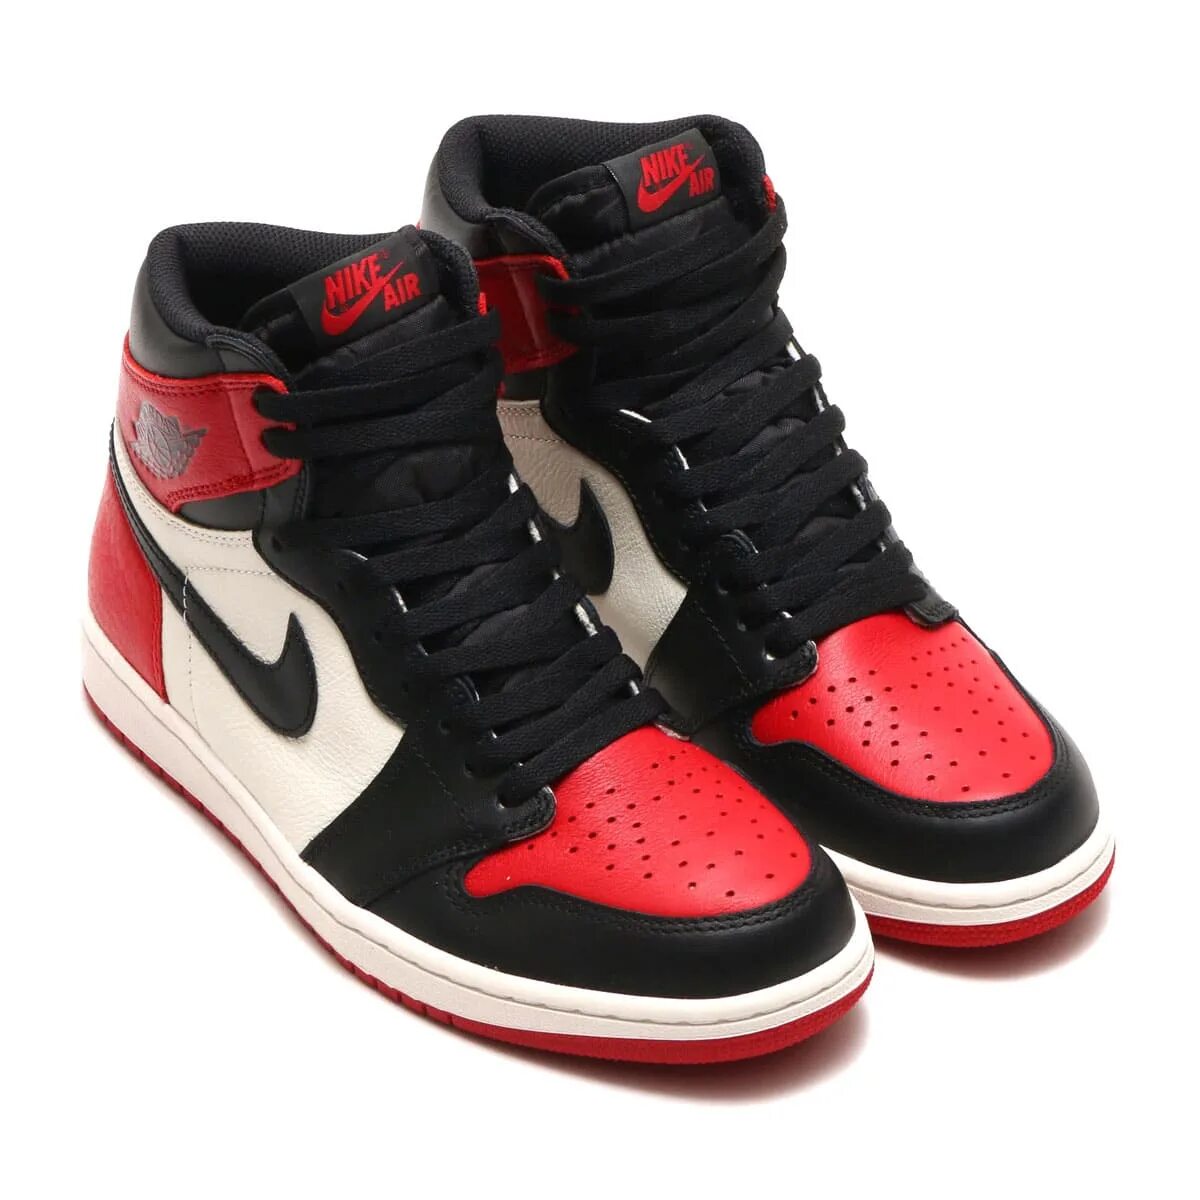 Nike jordan оригинал купить. Nike Air Jordan 1 Black Red. Nike Air Jordan 1 High. Nike Air Jordan 1. Nike Air Jordan 1 Red.